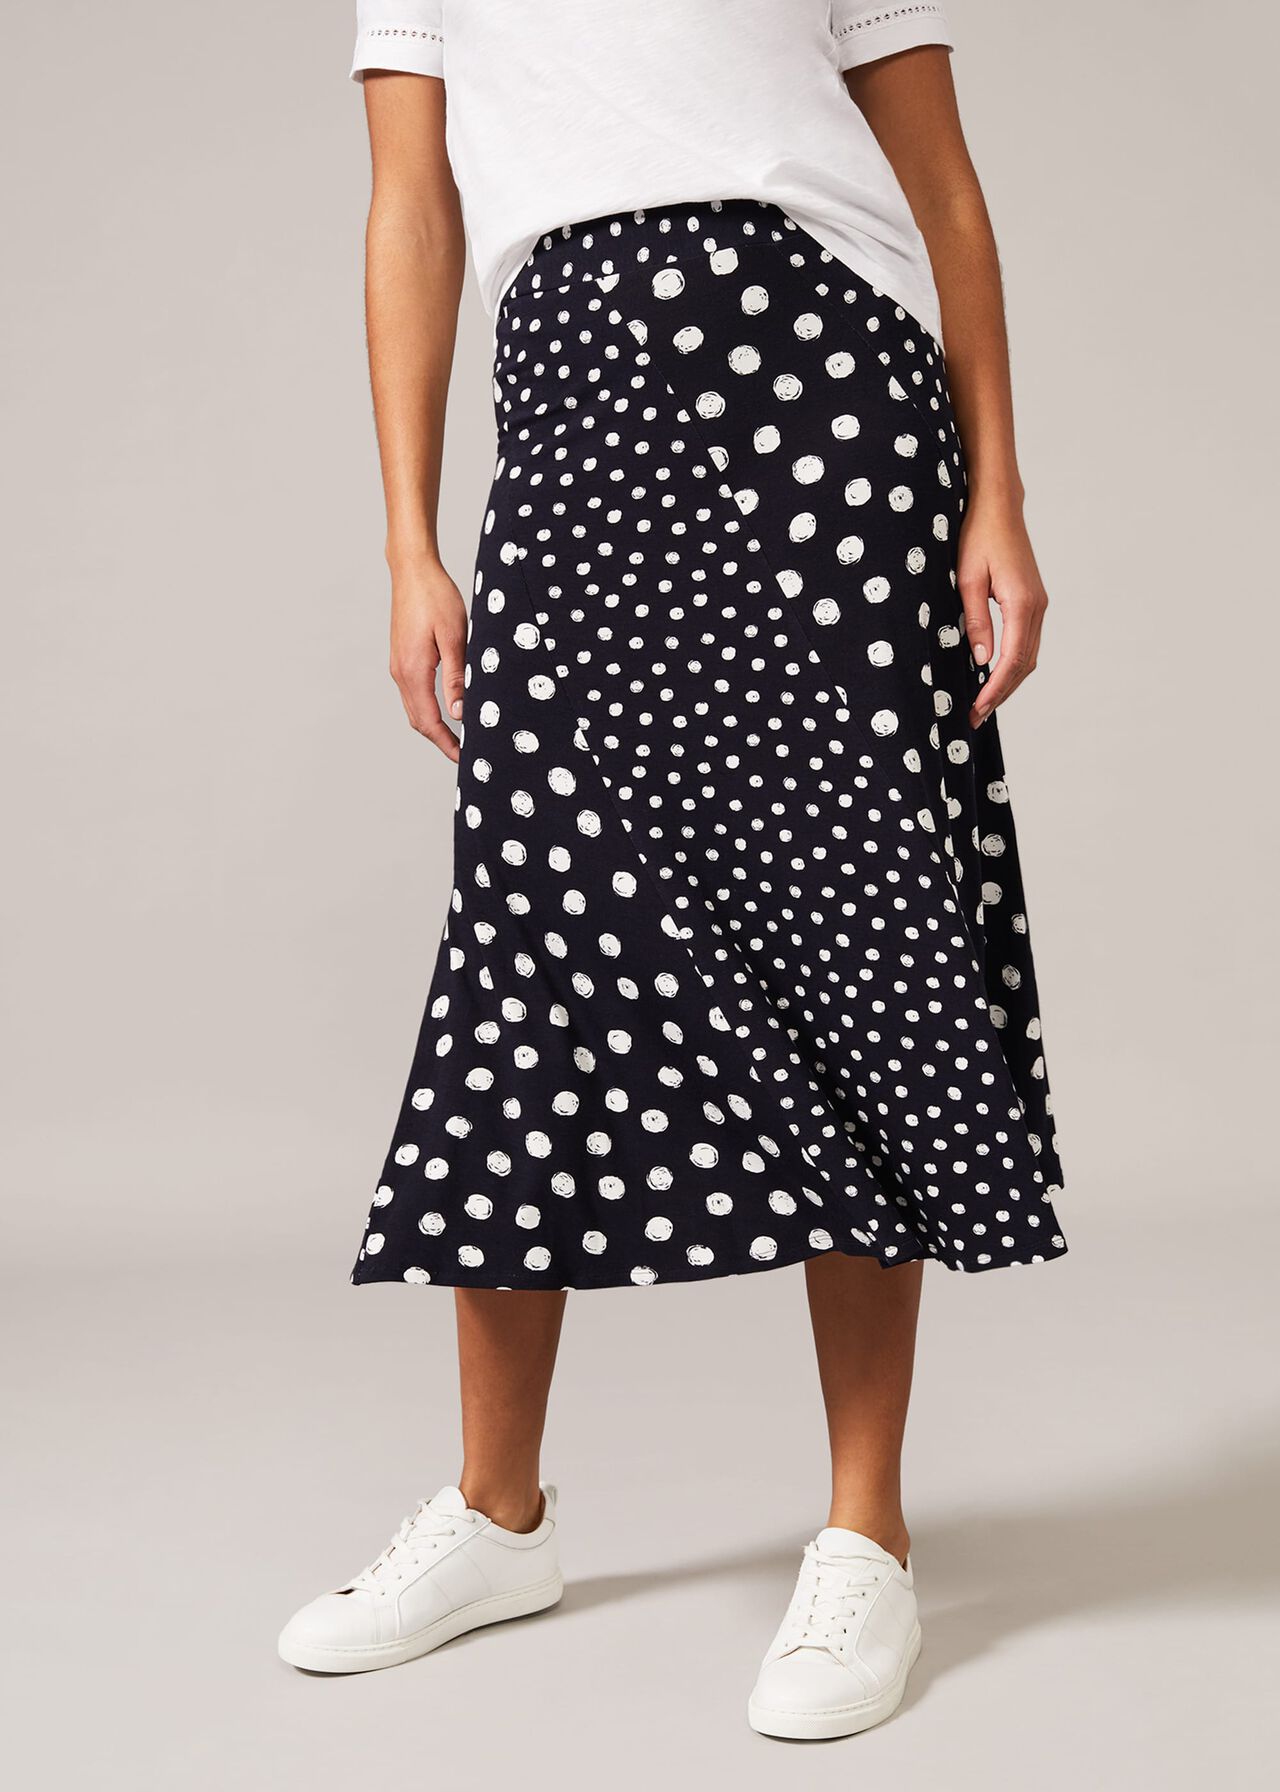 Denia Mixed Spot Panelled Skirt